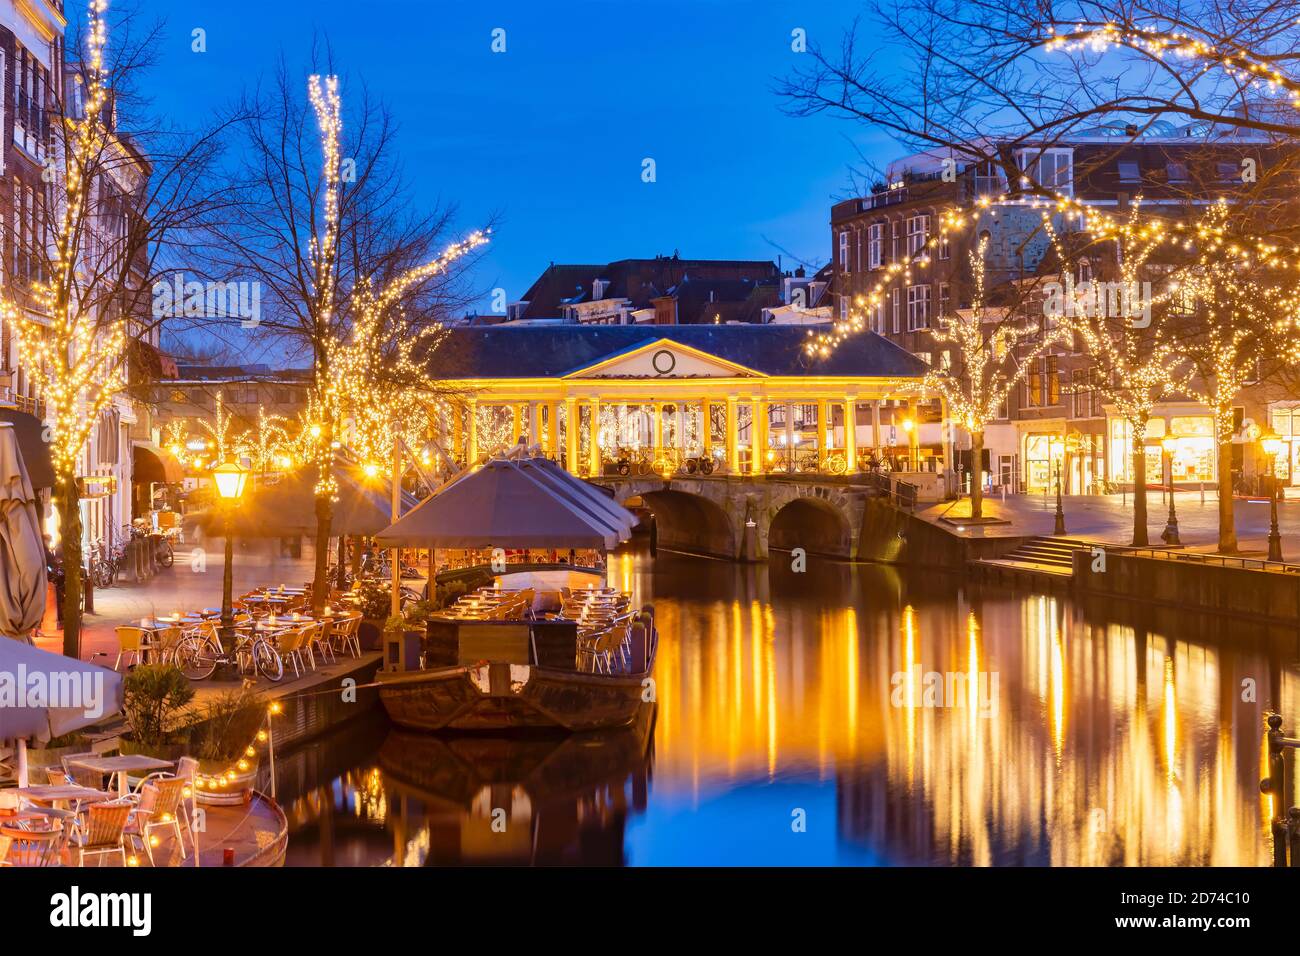 Alte Ansicht des niederländischen Oude Rijn-Kanals mit Brücke, historischen Gebäuden und weihnachtsbeleuchtung im Stadtzentrum von Leiden, Niederlande Stockfoto